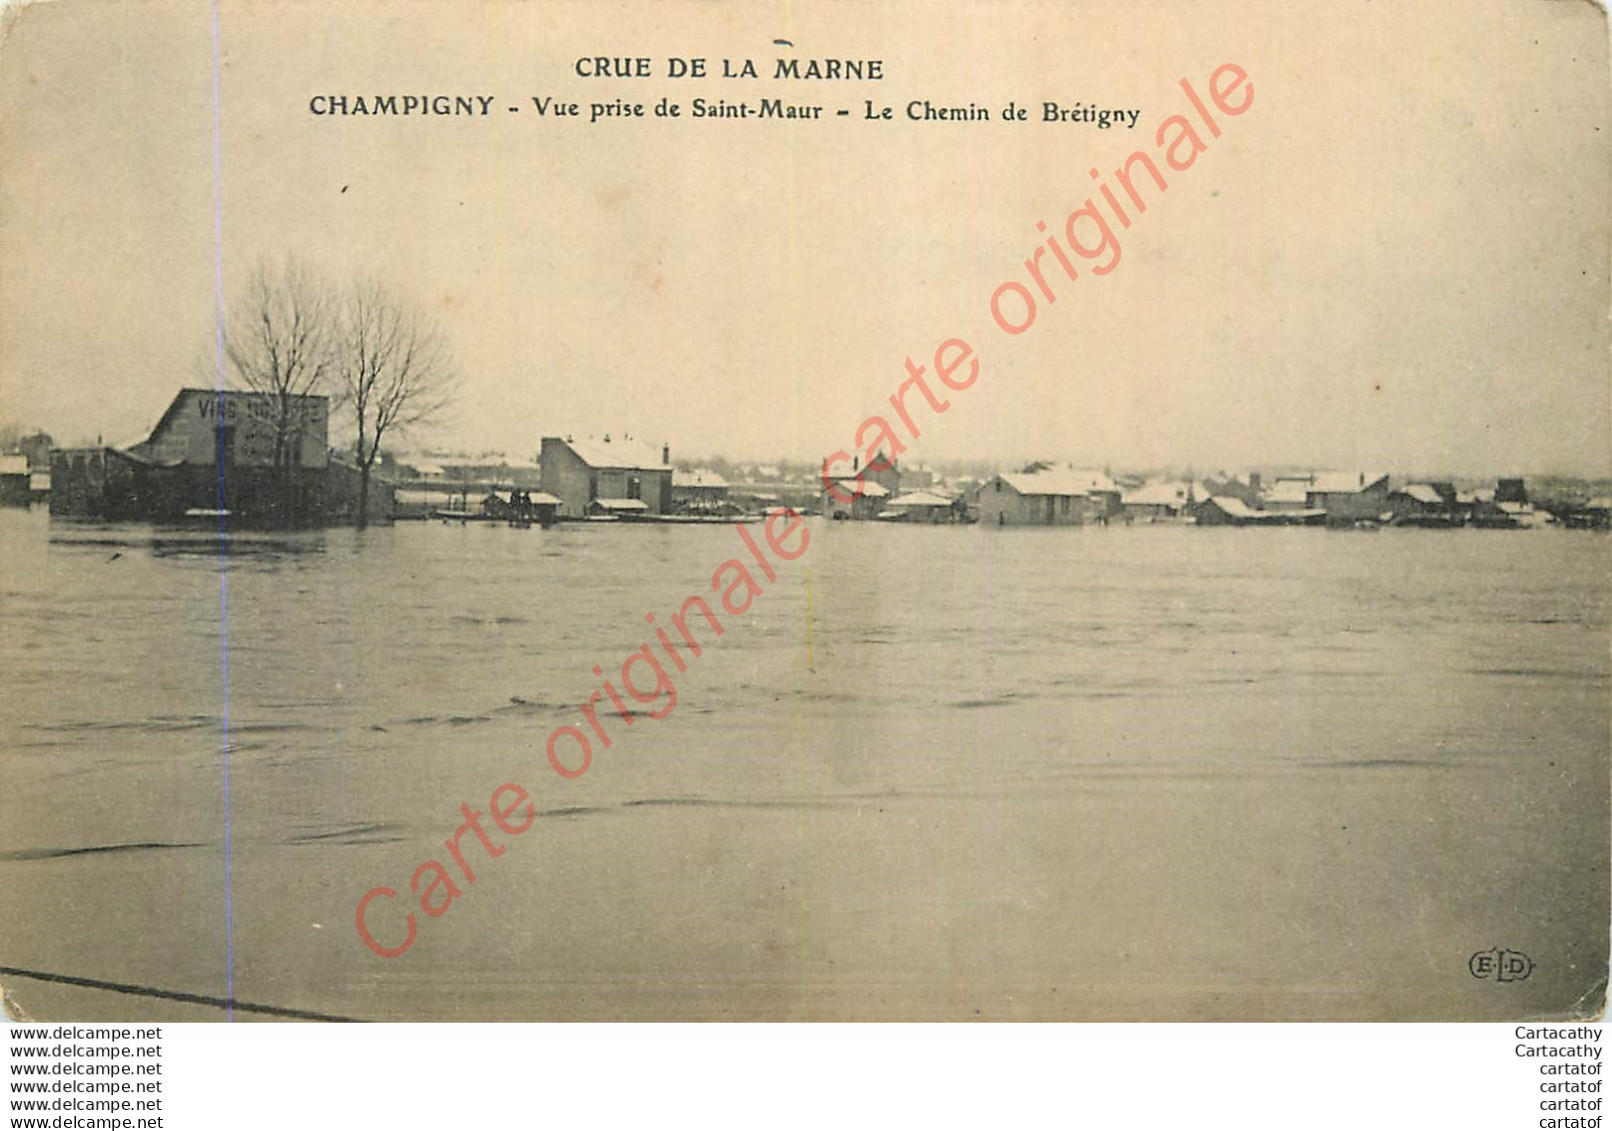 94. CHAMPIGNY . Le Chemin De Brétigny . CRUE DE LA MARNE . Vue Prise De St-Maur . - Champigny Sur Marne